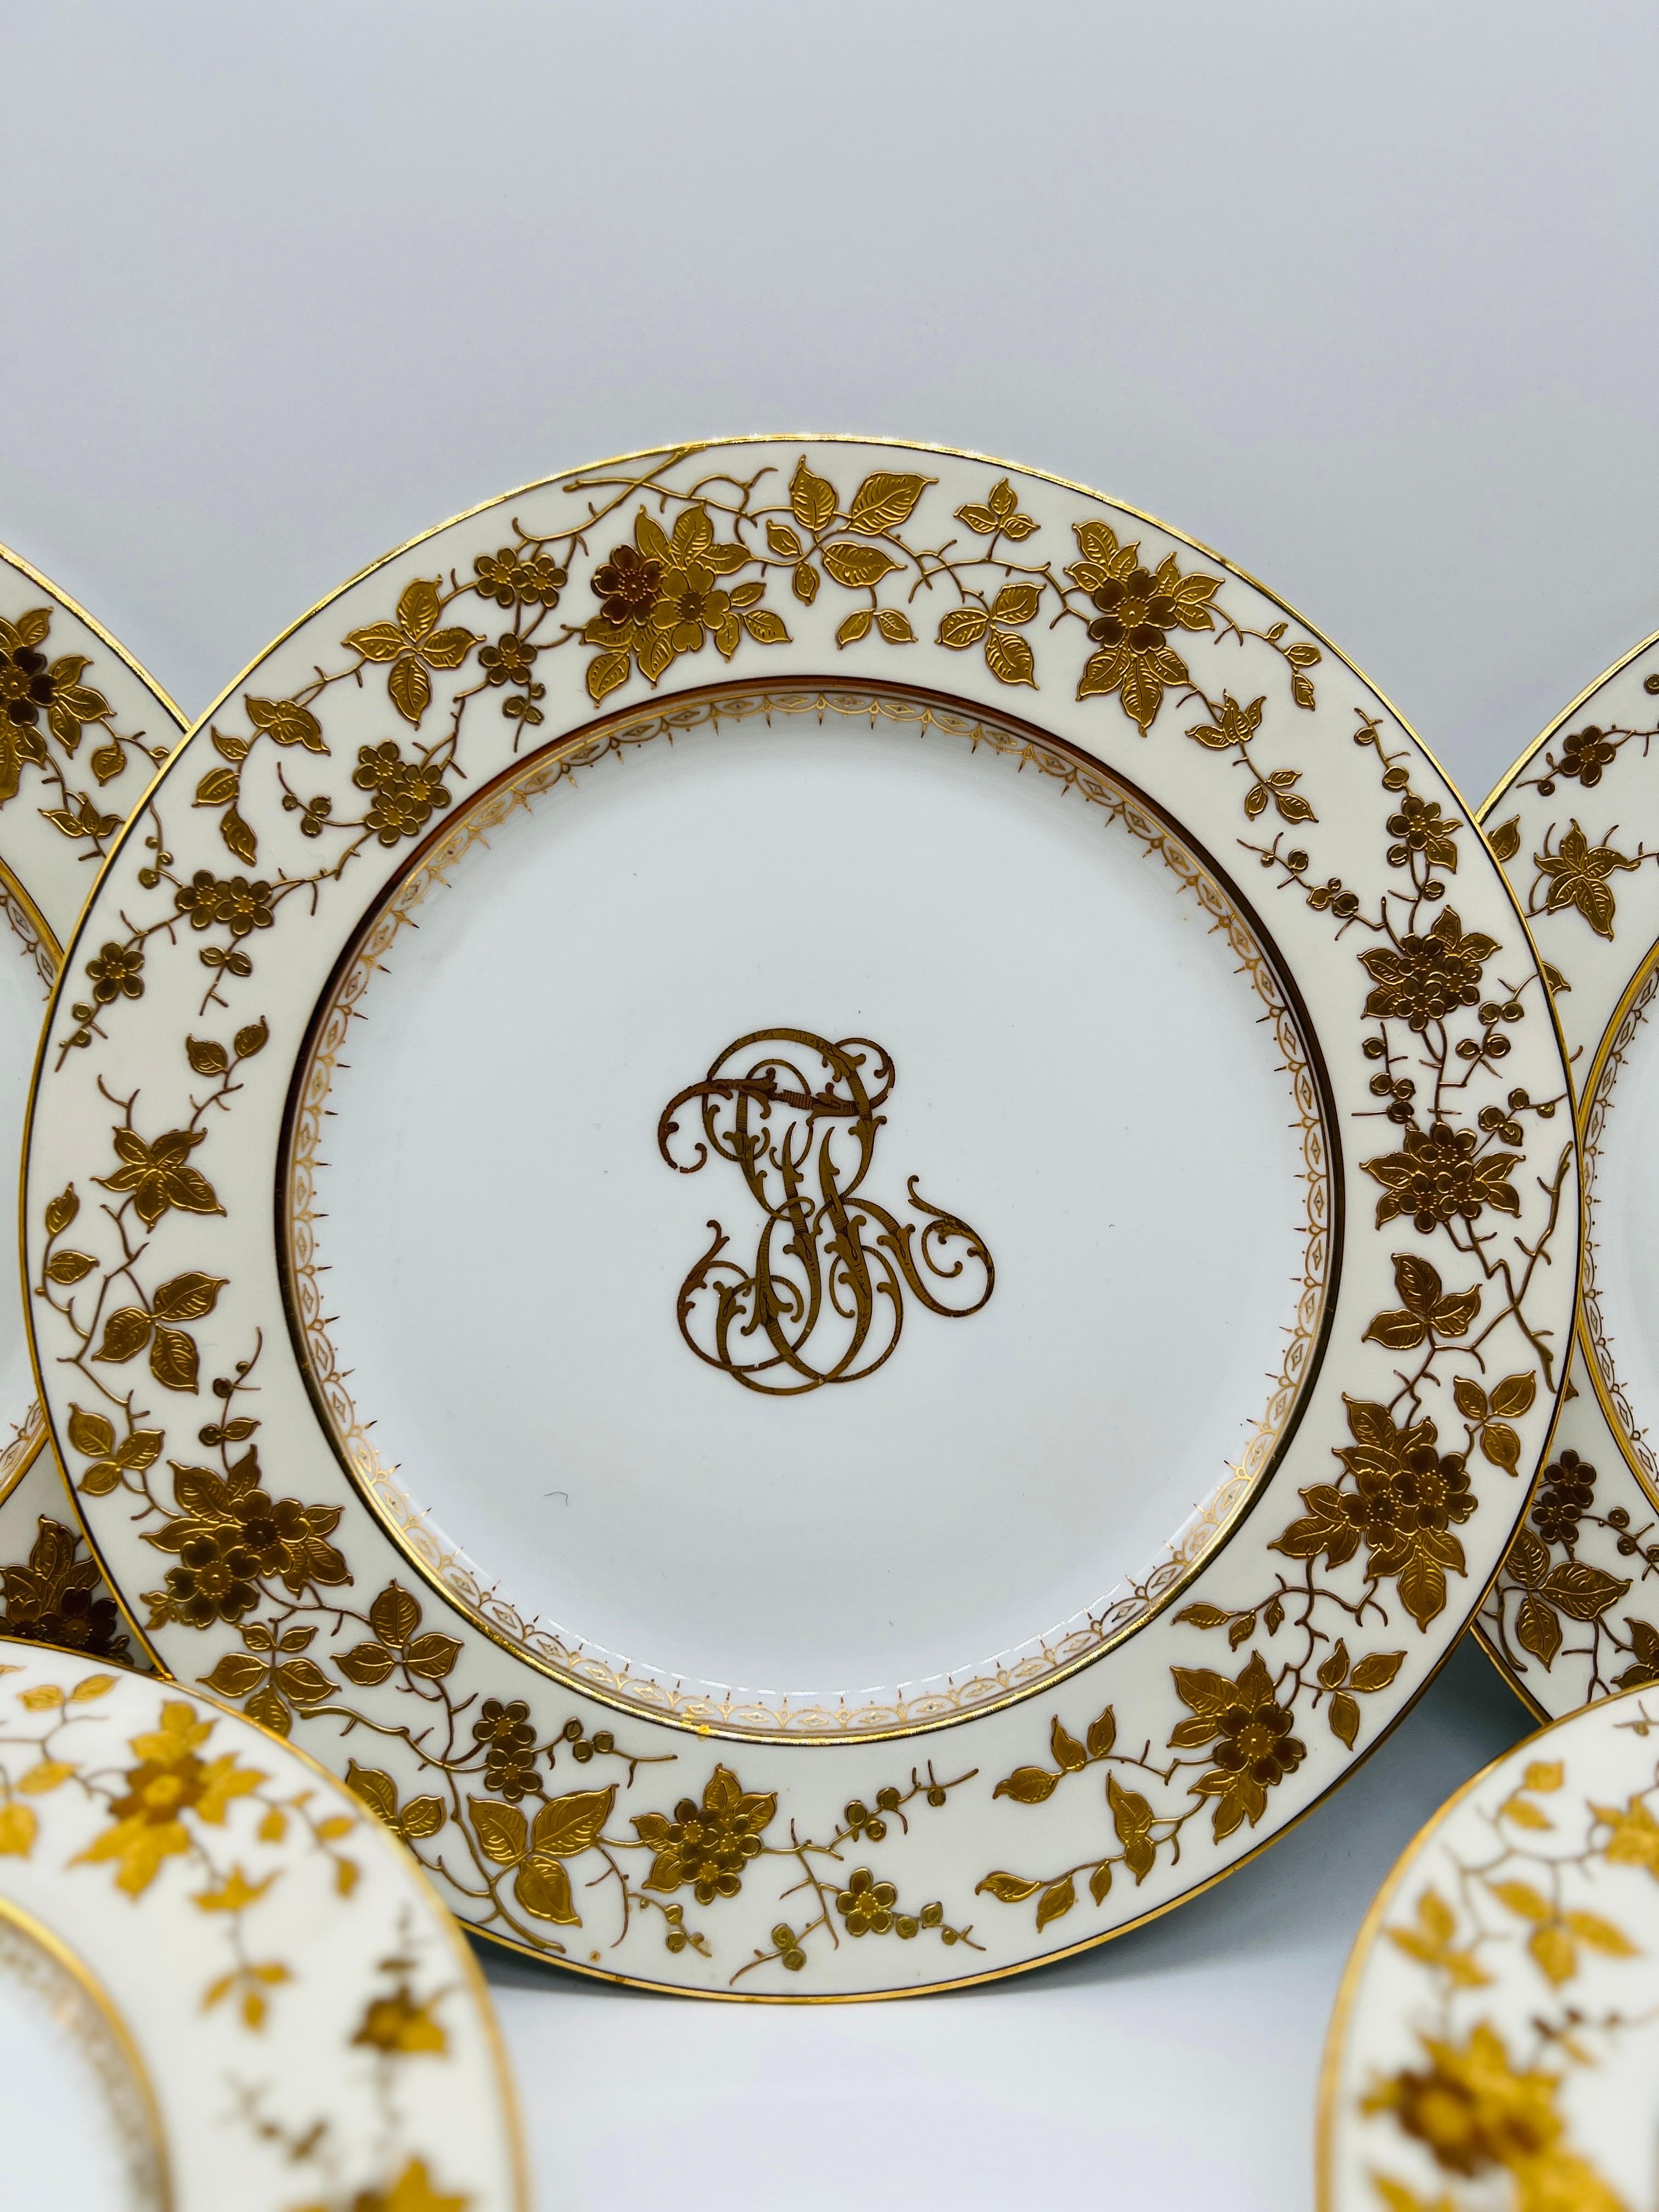 19th Century (10) Ten Fischer & Mieg Pirkenhammer Gilt Vine Encrusted Porcelain Dinner Plates For Sale